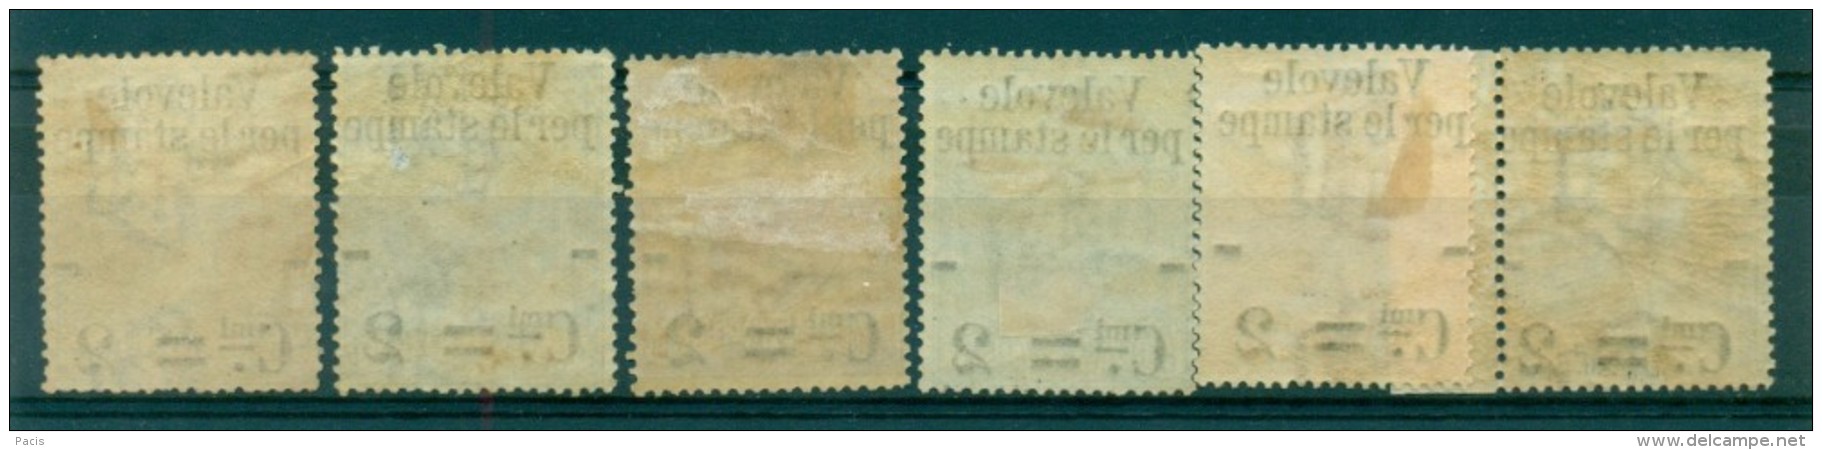 REGNO 1890 VALEVOLE PER LE STAMPE GOMMA ORIGINALE MH* - Paquetes Postales